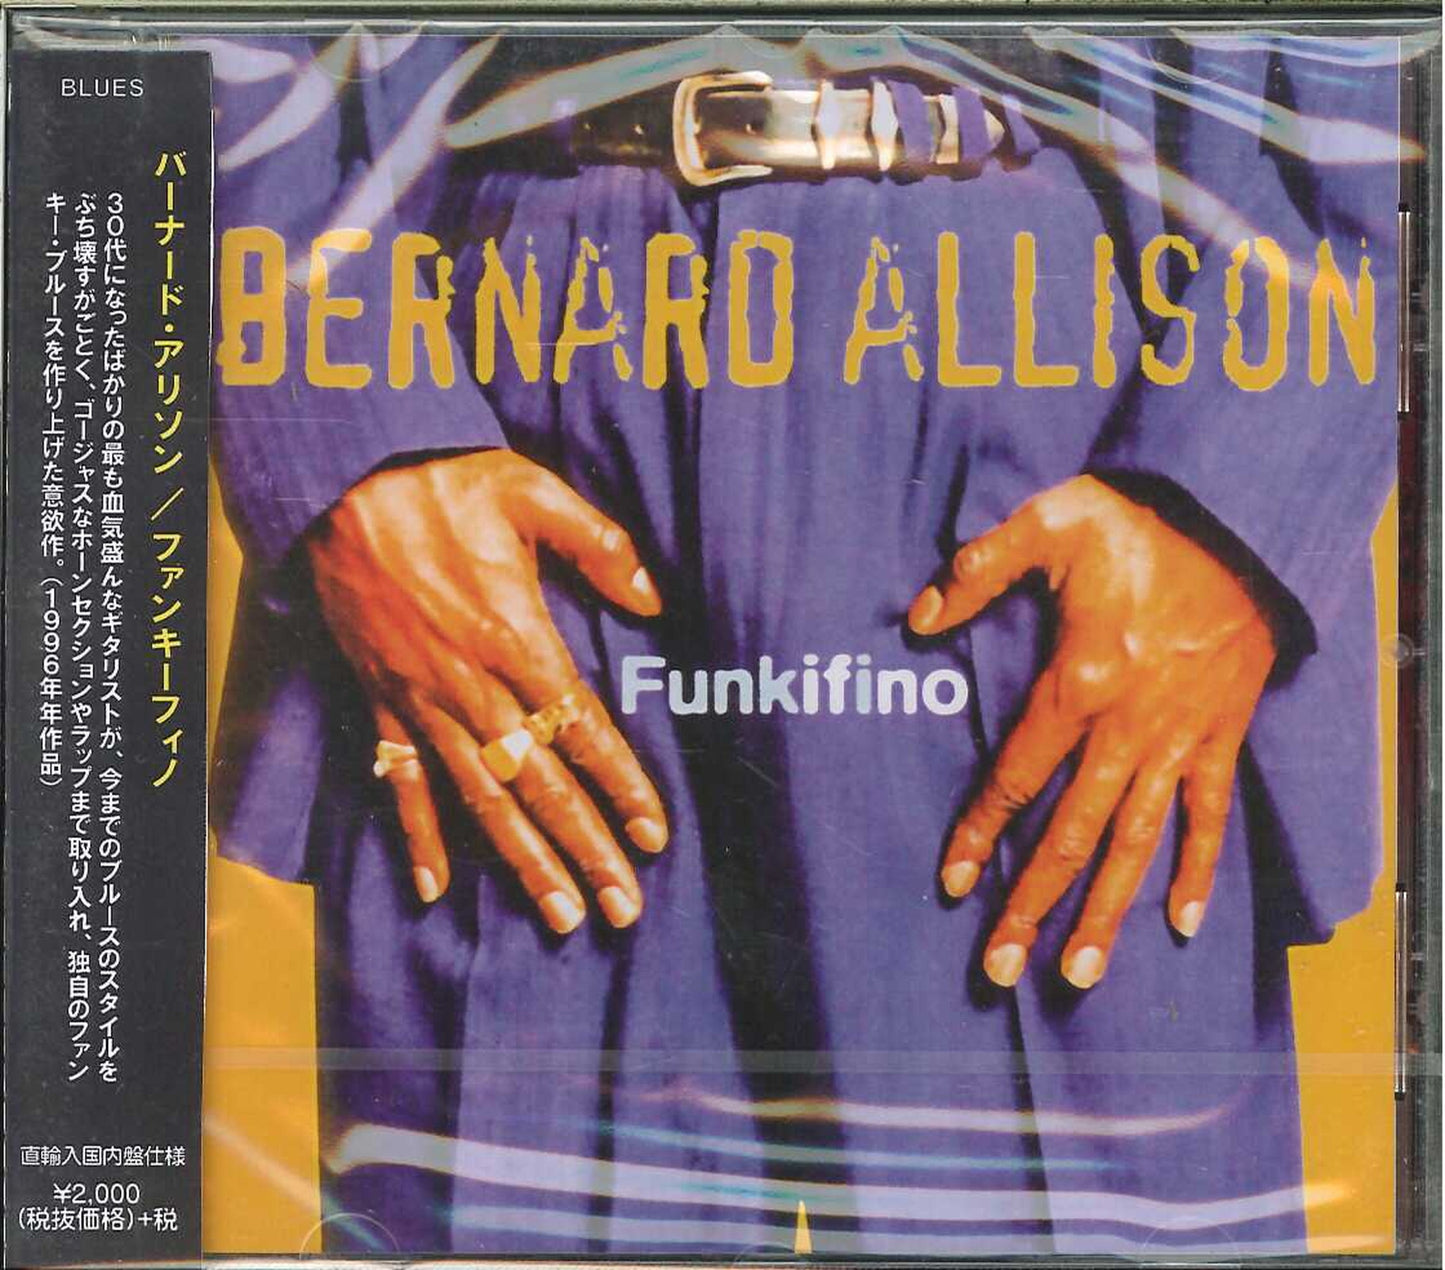 Bernard Allison - Funkifino - Japan CD